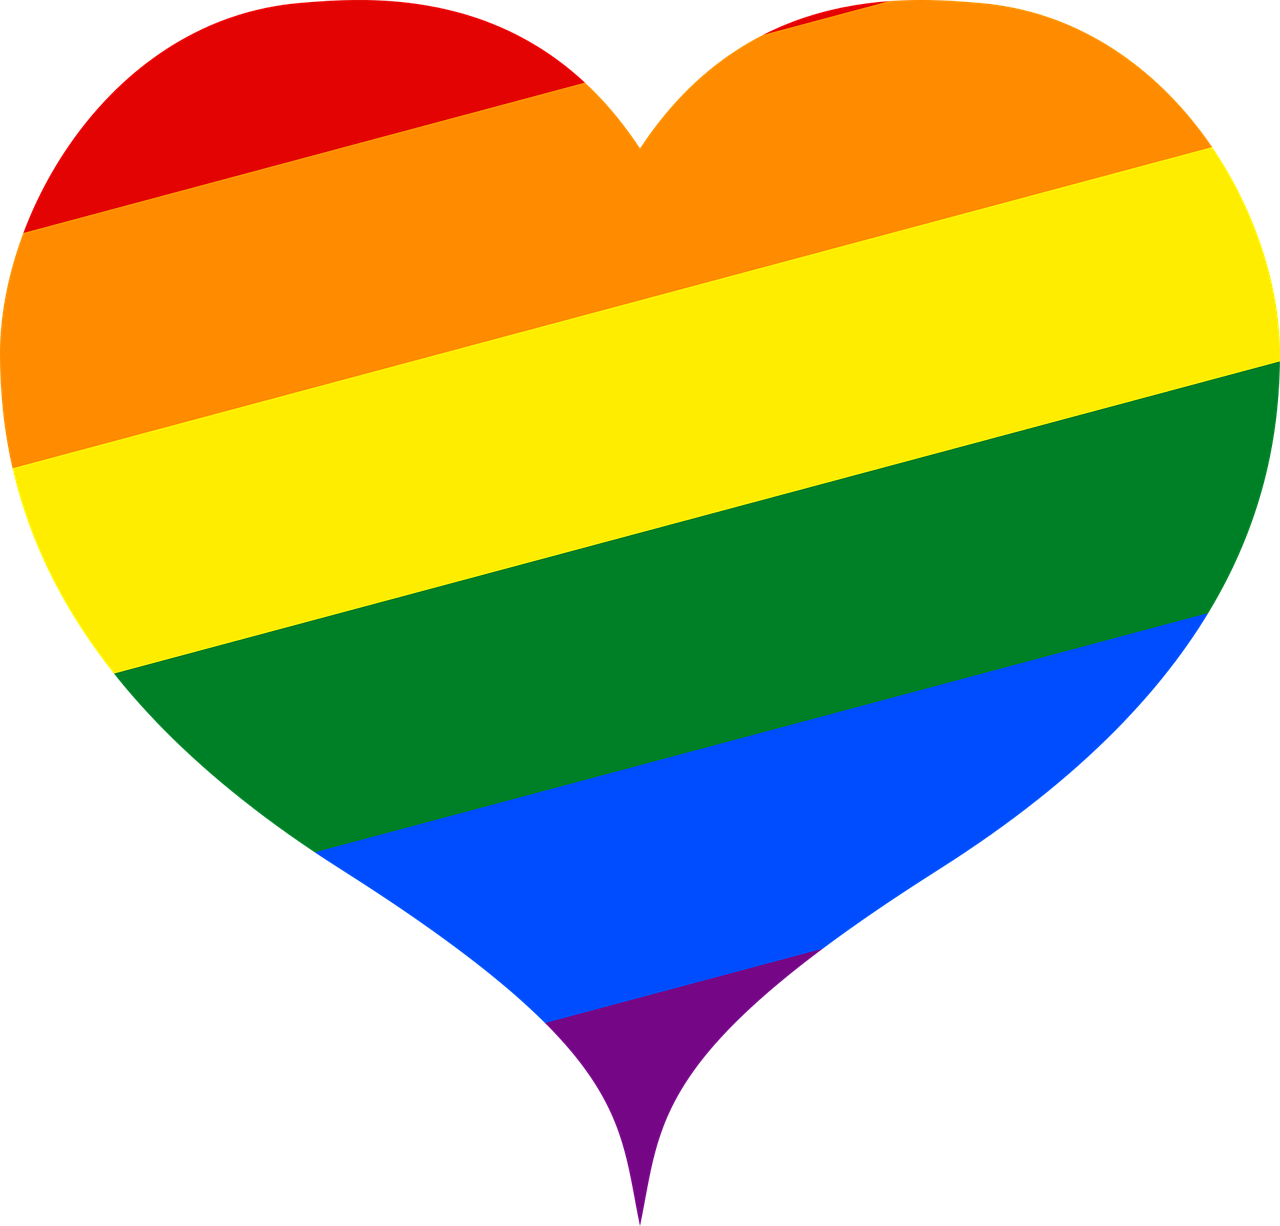 Un cuore, un arcobaleno [foto di Maiconfz, via pixabay, CC0 Creative Commons, Libera per usi commerciali, Attribuzione non richiesta]